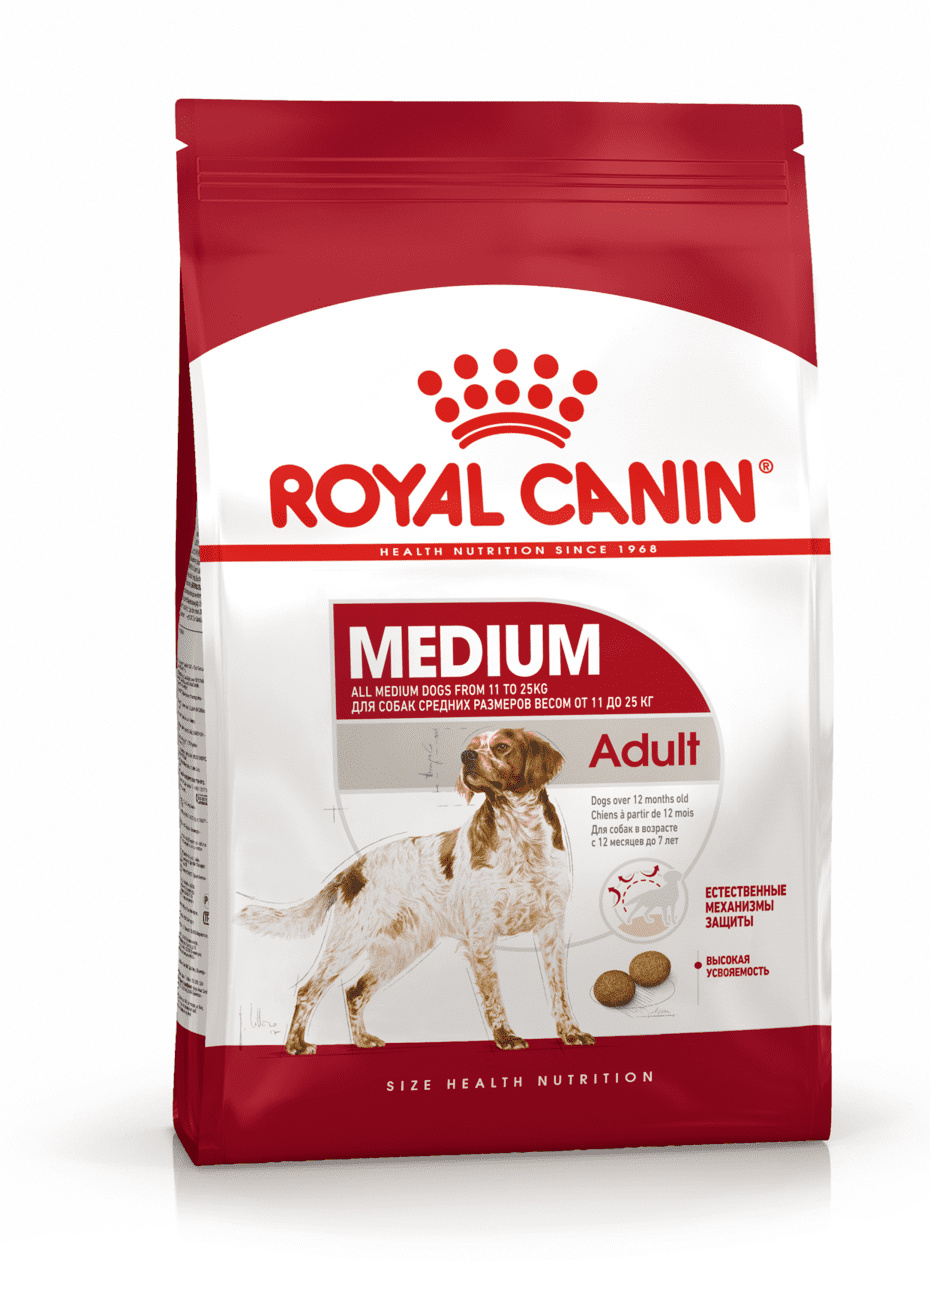 Для взрослых собак средних размеров: 11-25 кг, 1-7 лет (15 кг) Royal Canin (сухие корма) Для взрослых собак средних размеров: 11-25 кг, 1-7 лет (15 кг) - фото 1